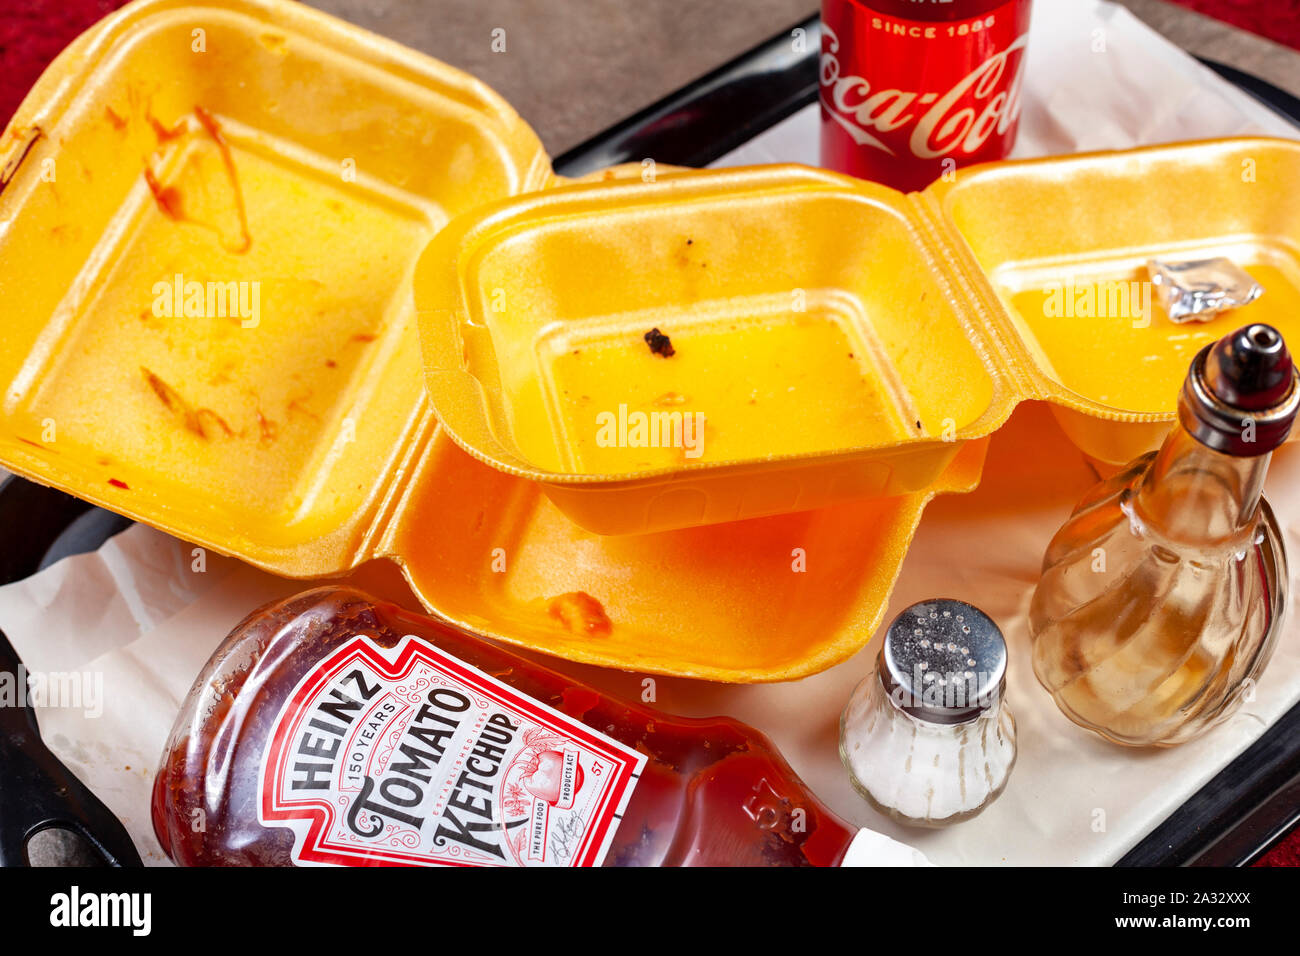 WELWYN GARDEN CITY, VEREINIGTES KÖNIGREICH - Oktober 01, 2019: Leere Kartons entfernt auf einem Tablett mit einen Drink nehmen können und eine ketchupflasche Stockfoto